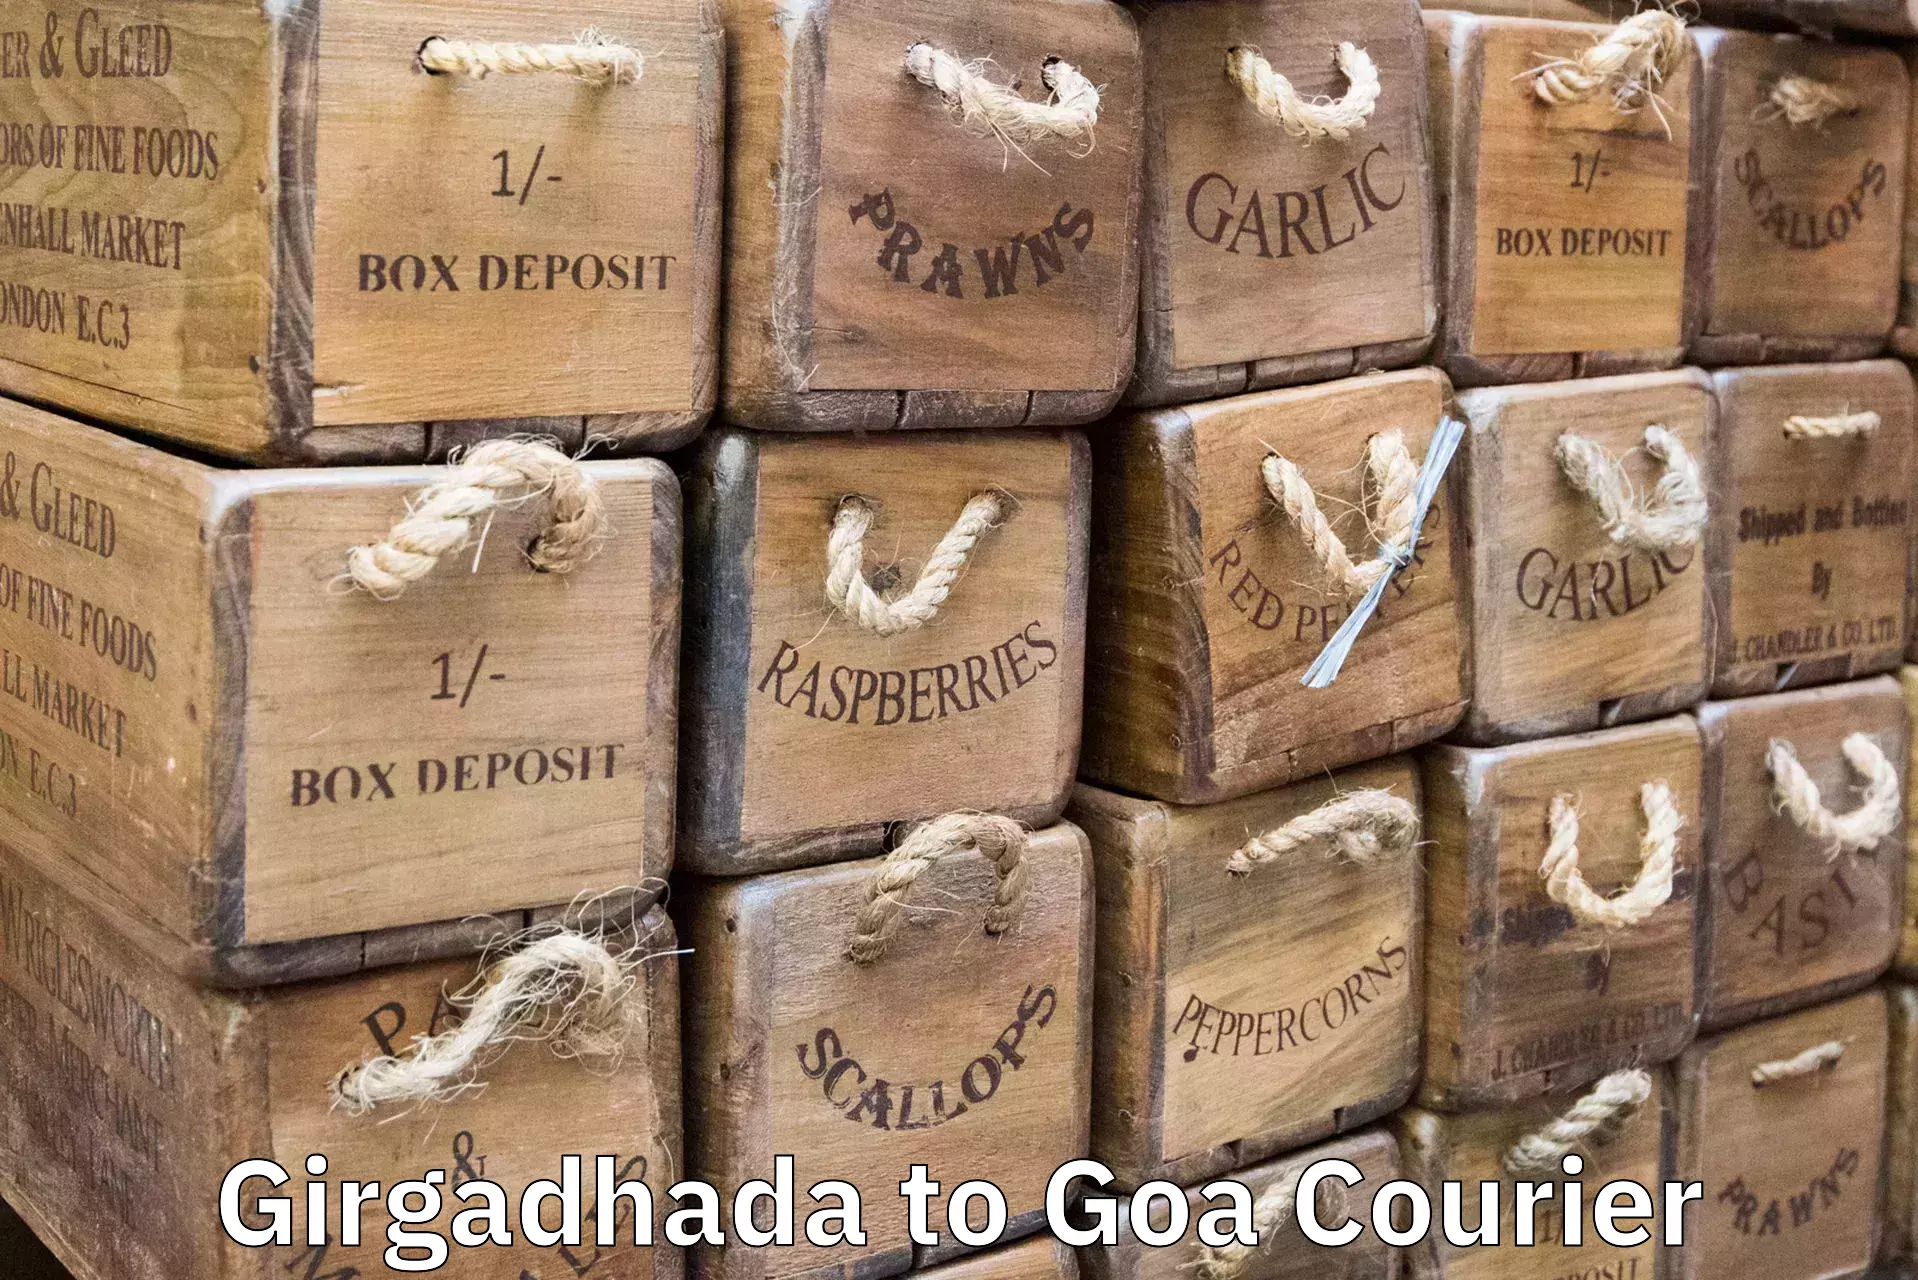 Luggage shipping guide in Girgadhada to Vasco da Gama